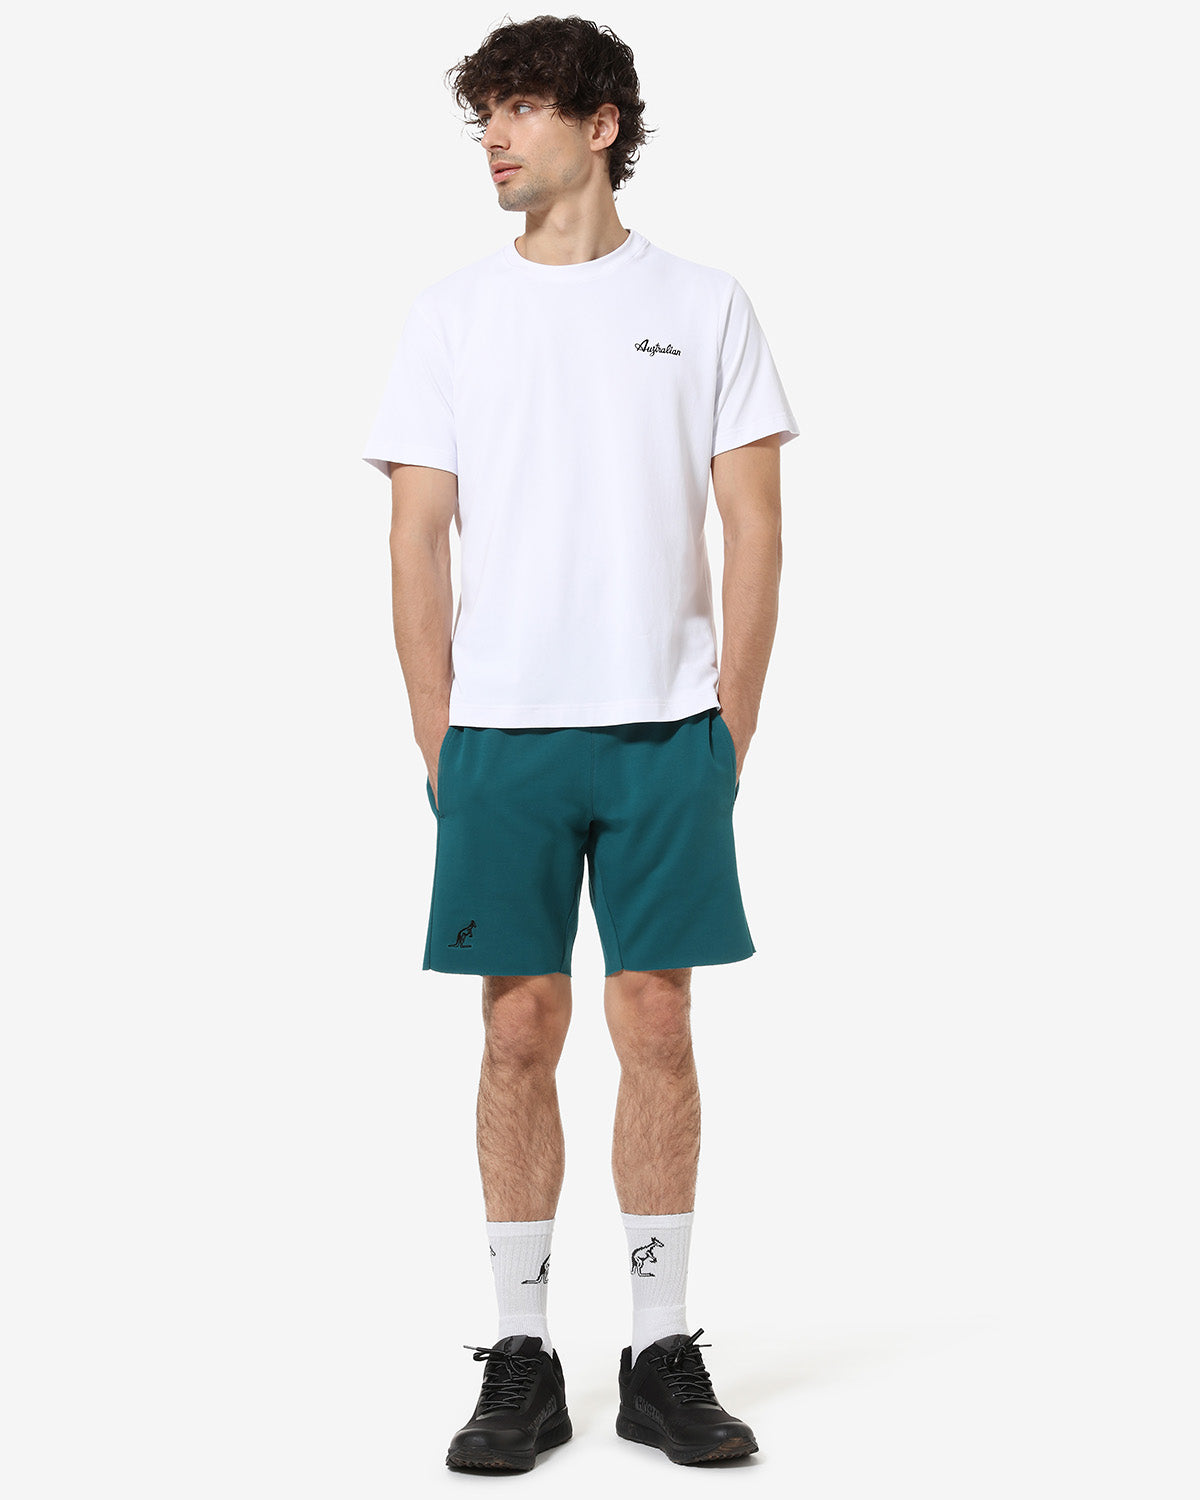 Essential Short: Australian Sportswear